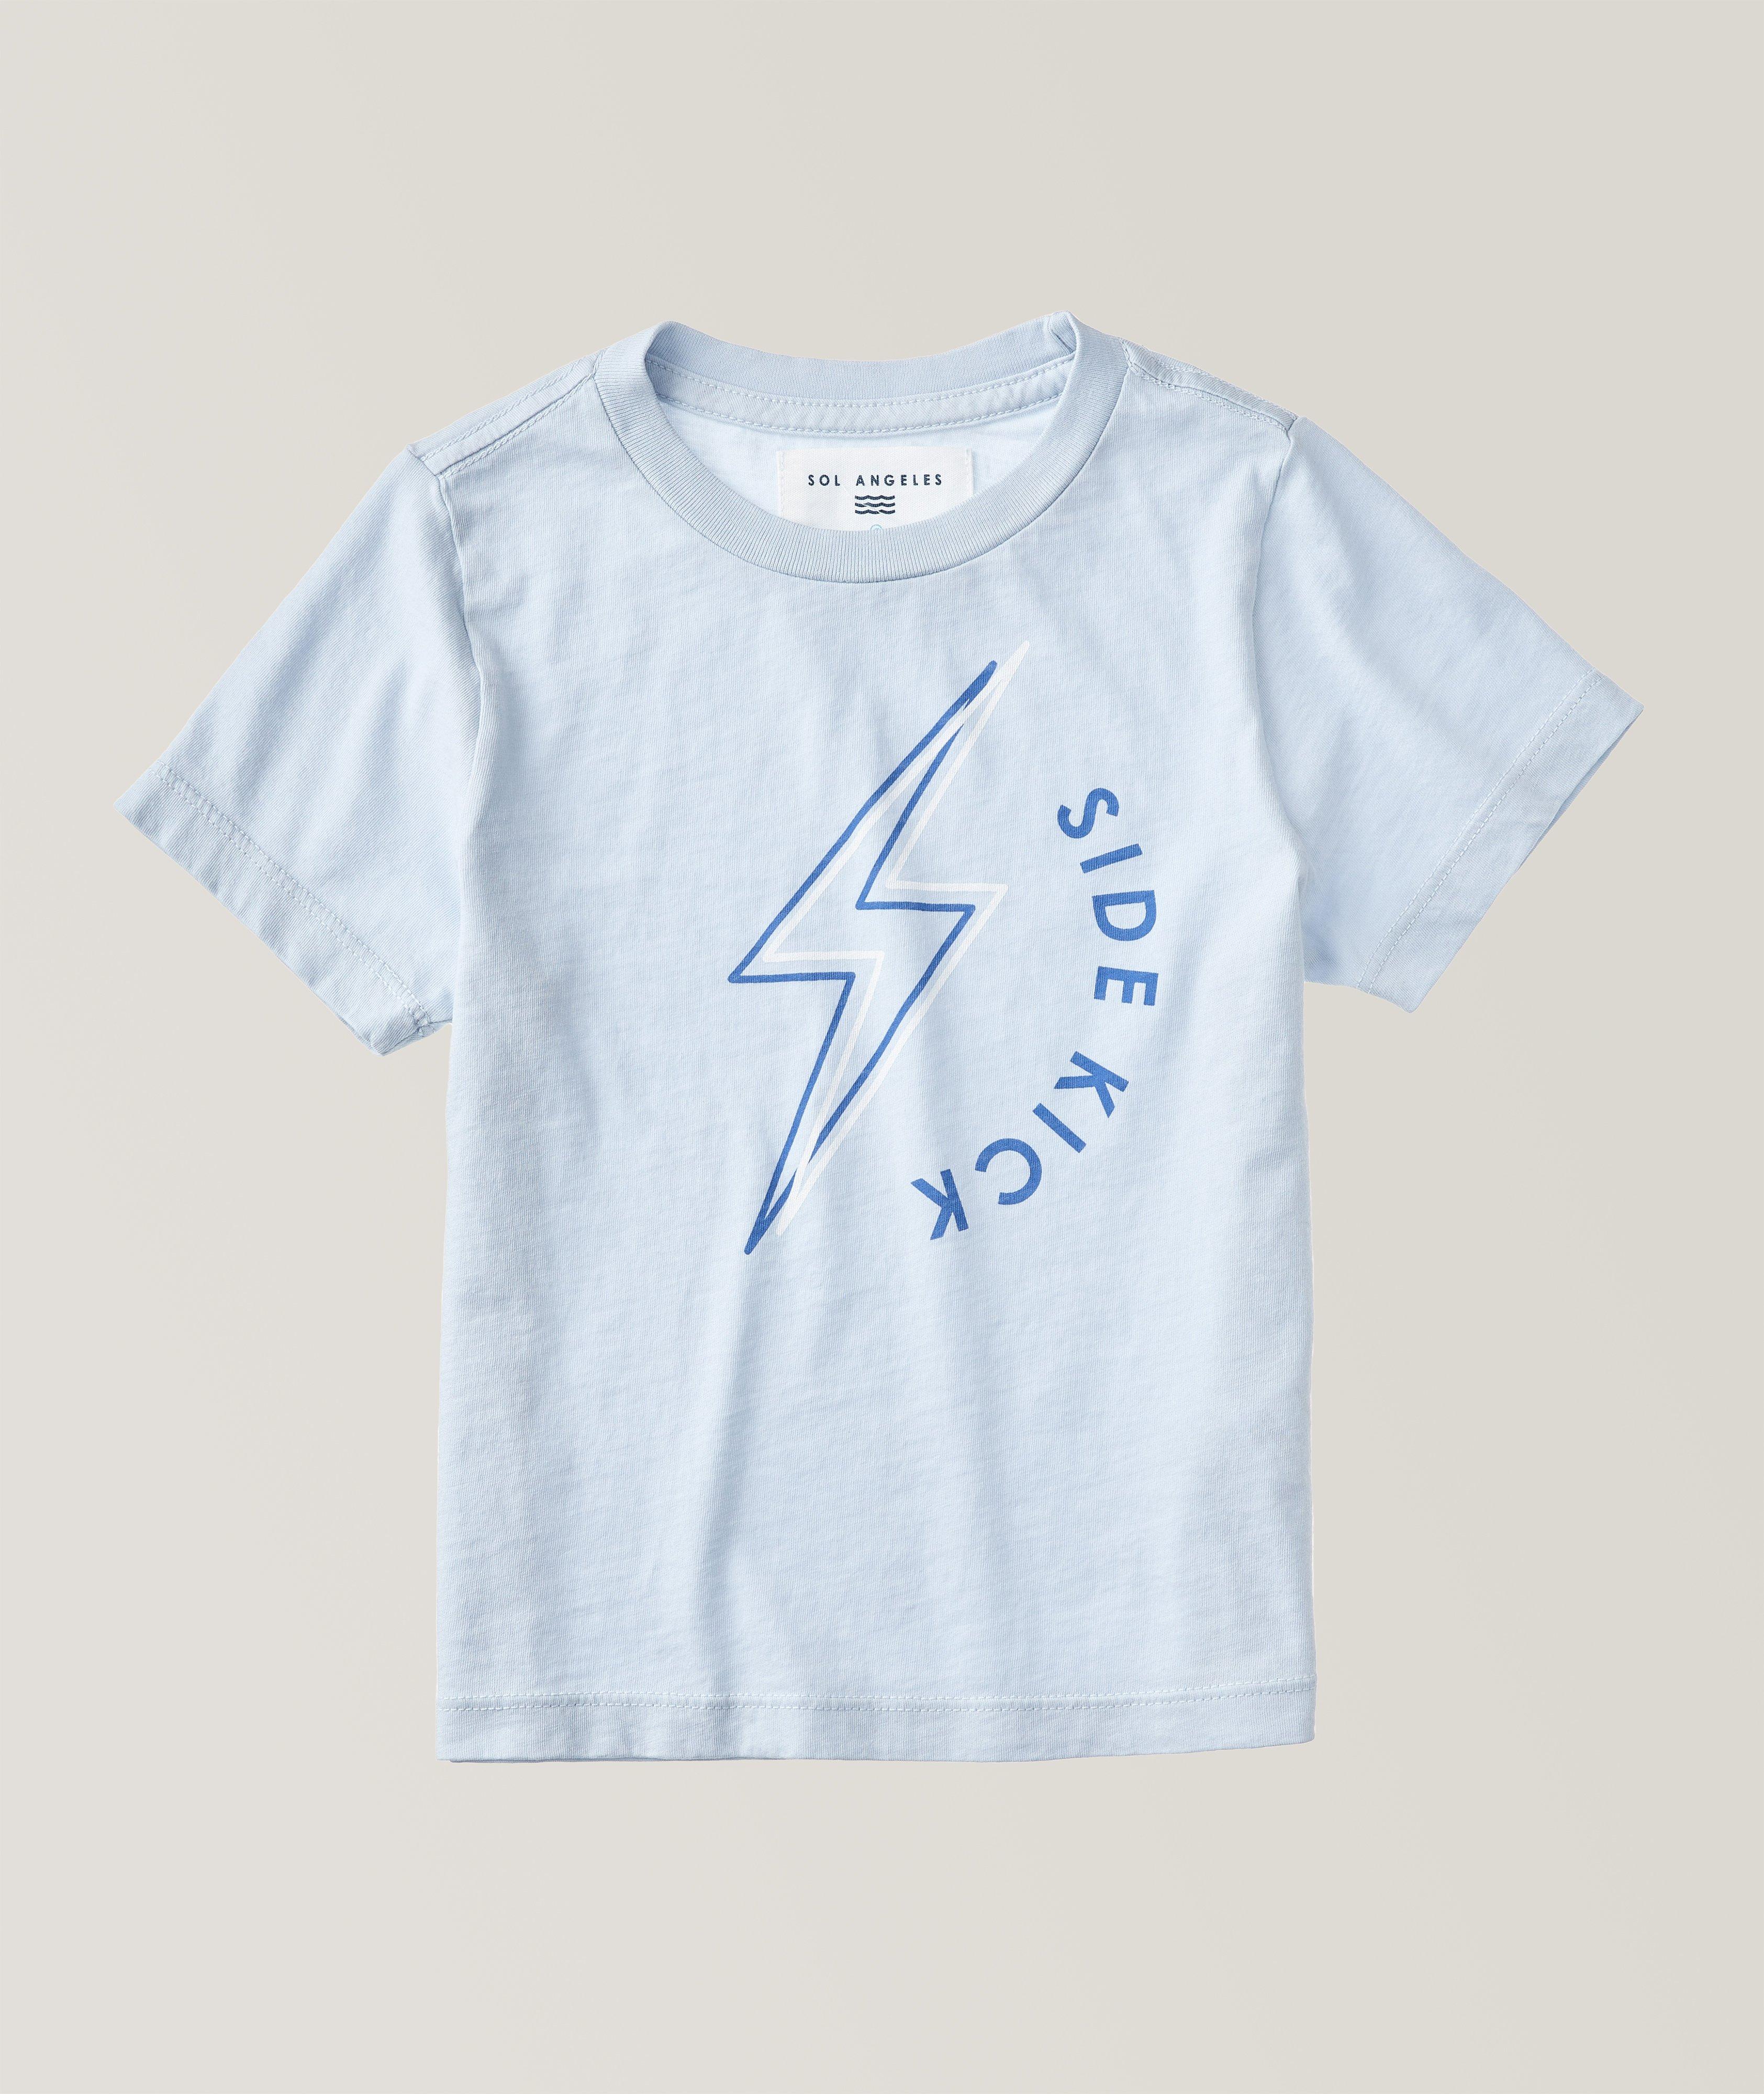 Side Kick Toddler T-Shirt